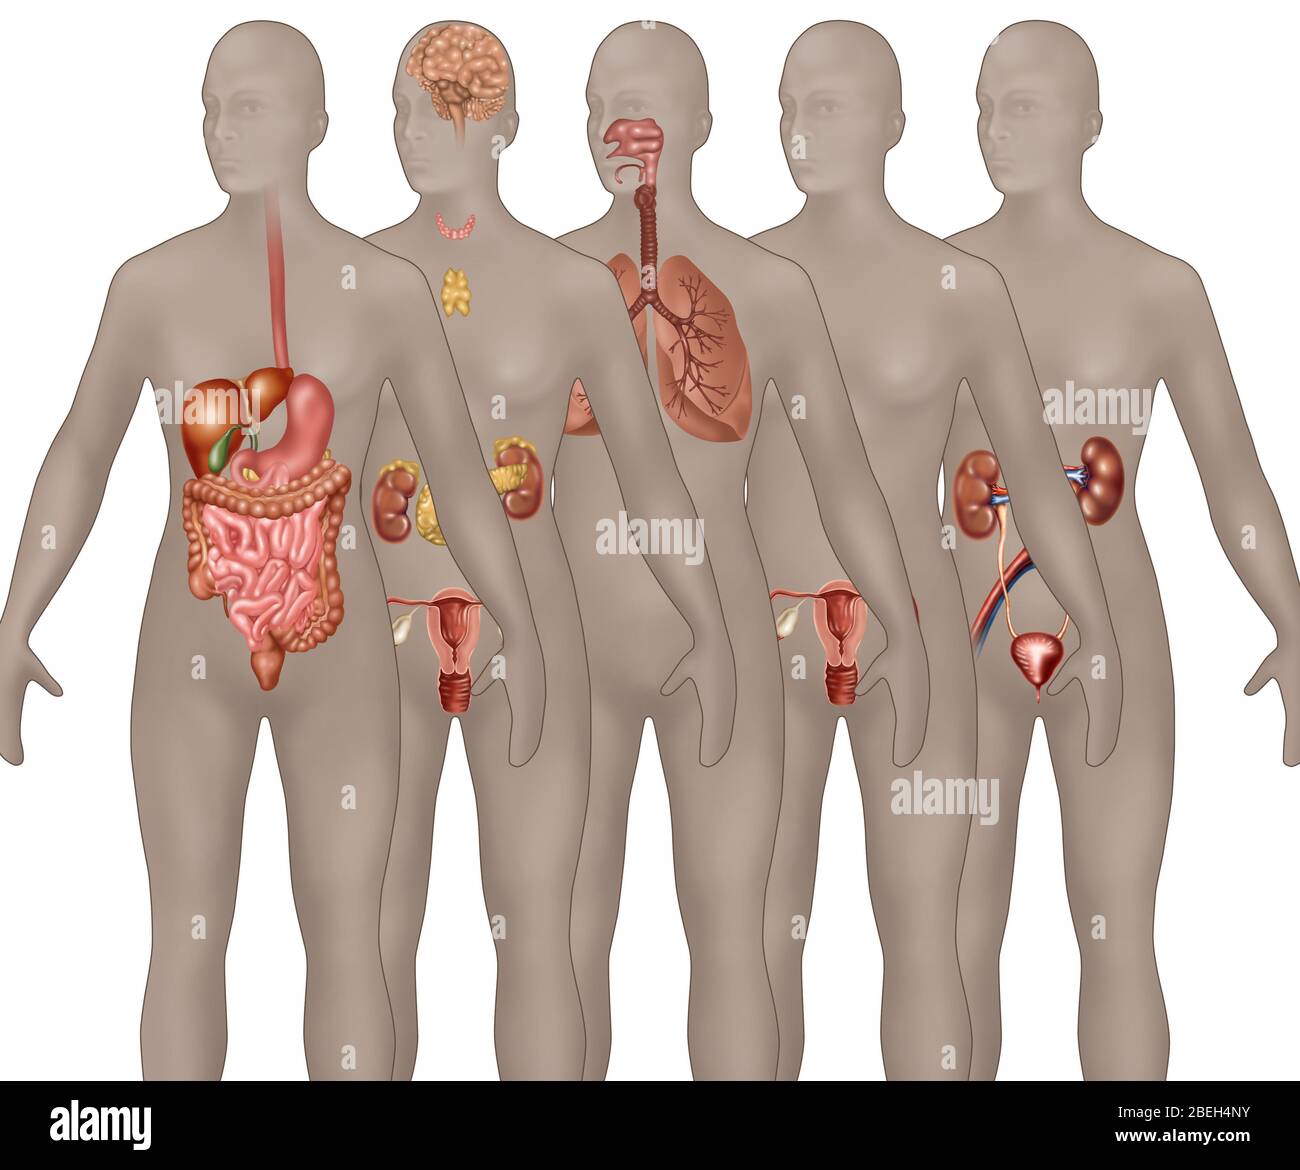 Organsysteme in der weiblichen Anatomie dargestellt. Von Vordergrund zu Hintergrund dargestellt sind: Verdauungssystem, endokrine System, Atemwege, männliche Fortpflanzungssystem und Harnsystem. Stockfoto